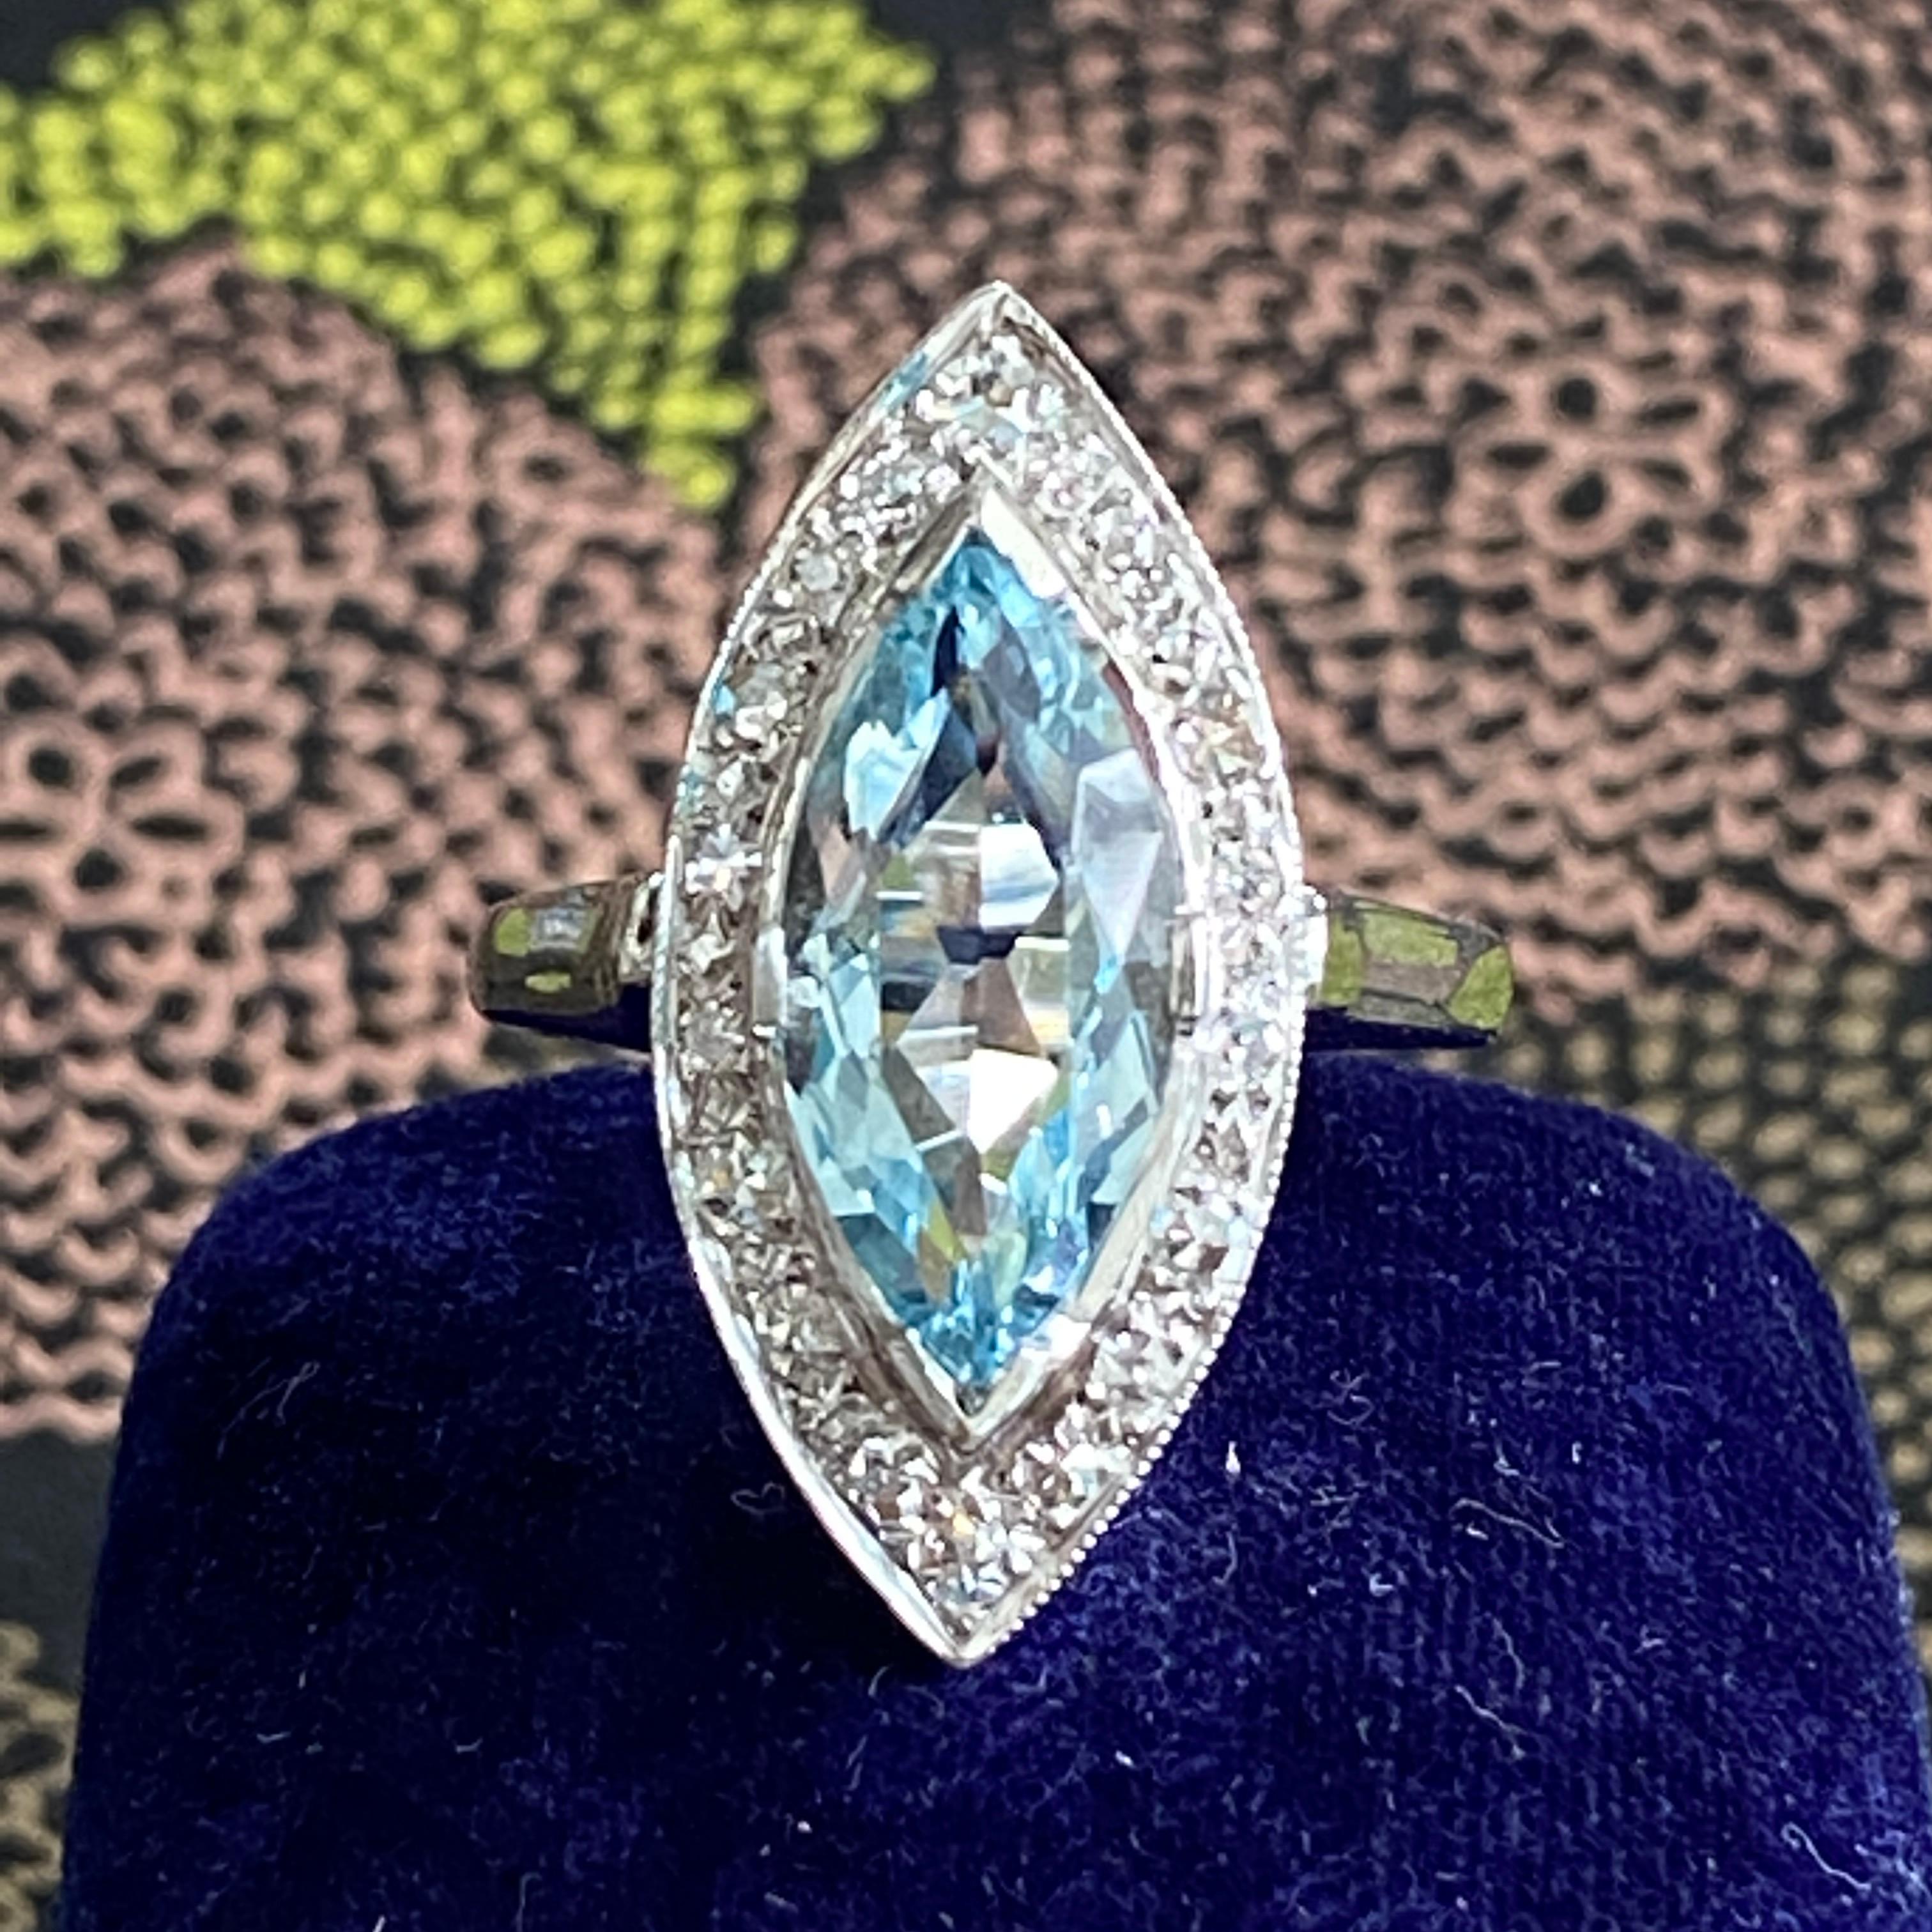 Détails :
Bague classique Vintage marquise aigue-marine et diamant ! L'aigue-marine taillée en marquise mesure 15,6 mm x 7,6 mm (environ 2,5 carats) et les 19 diamants mesurent entre 1,75 et 2,25 mm. L'aigue-marine est d'un bleu clair, classique et